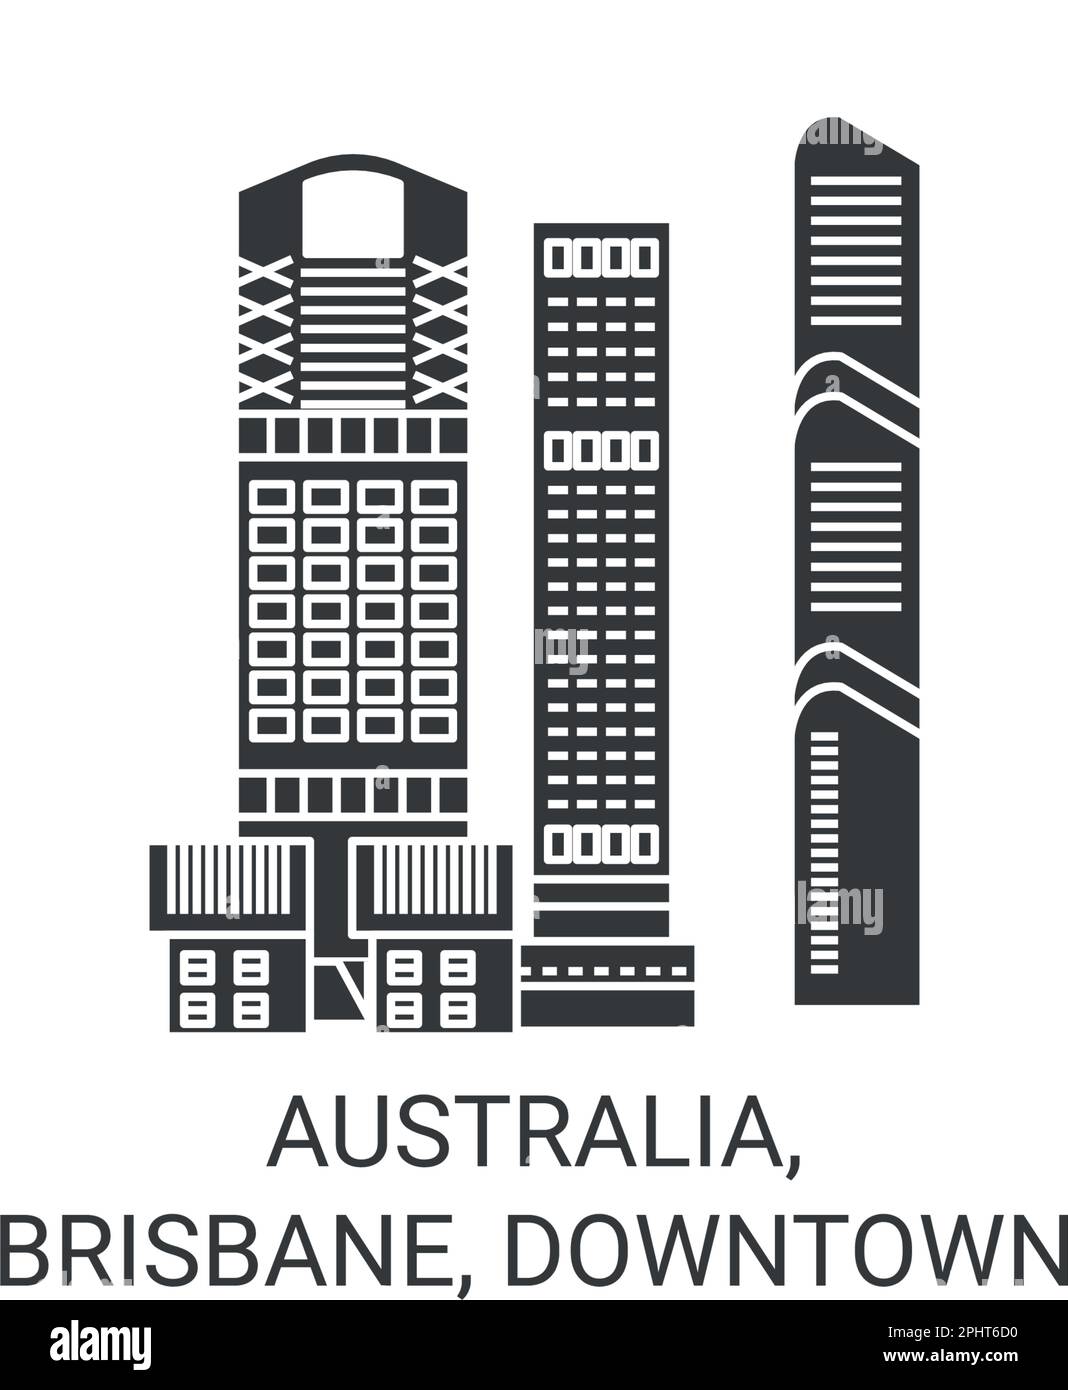 Australia, Brisbane, Downtown travel landmark vector illustration Stock Vector